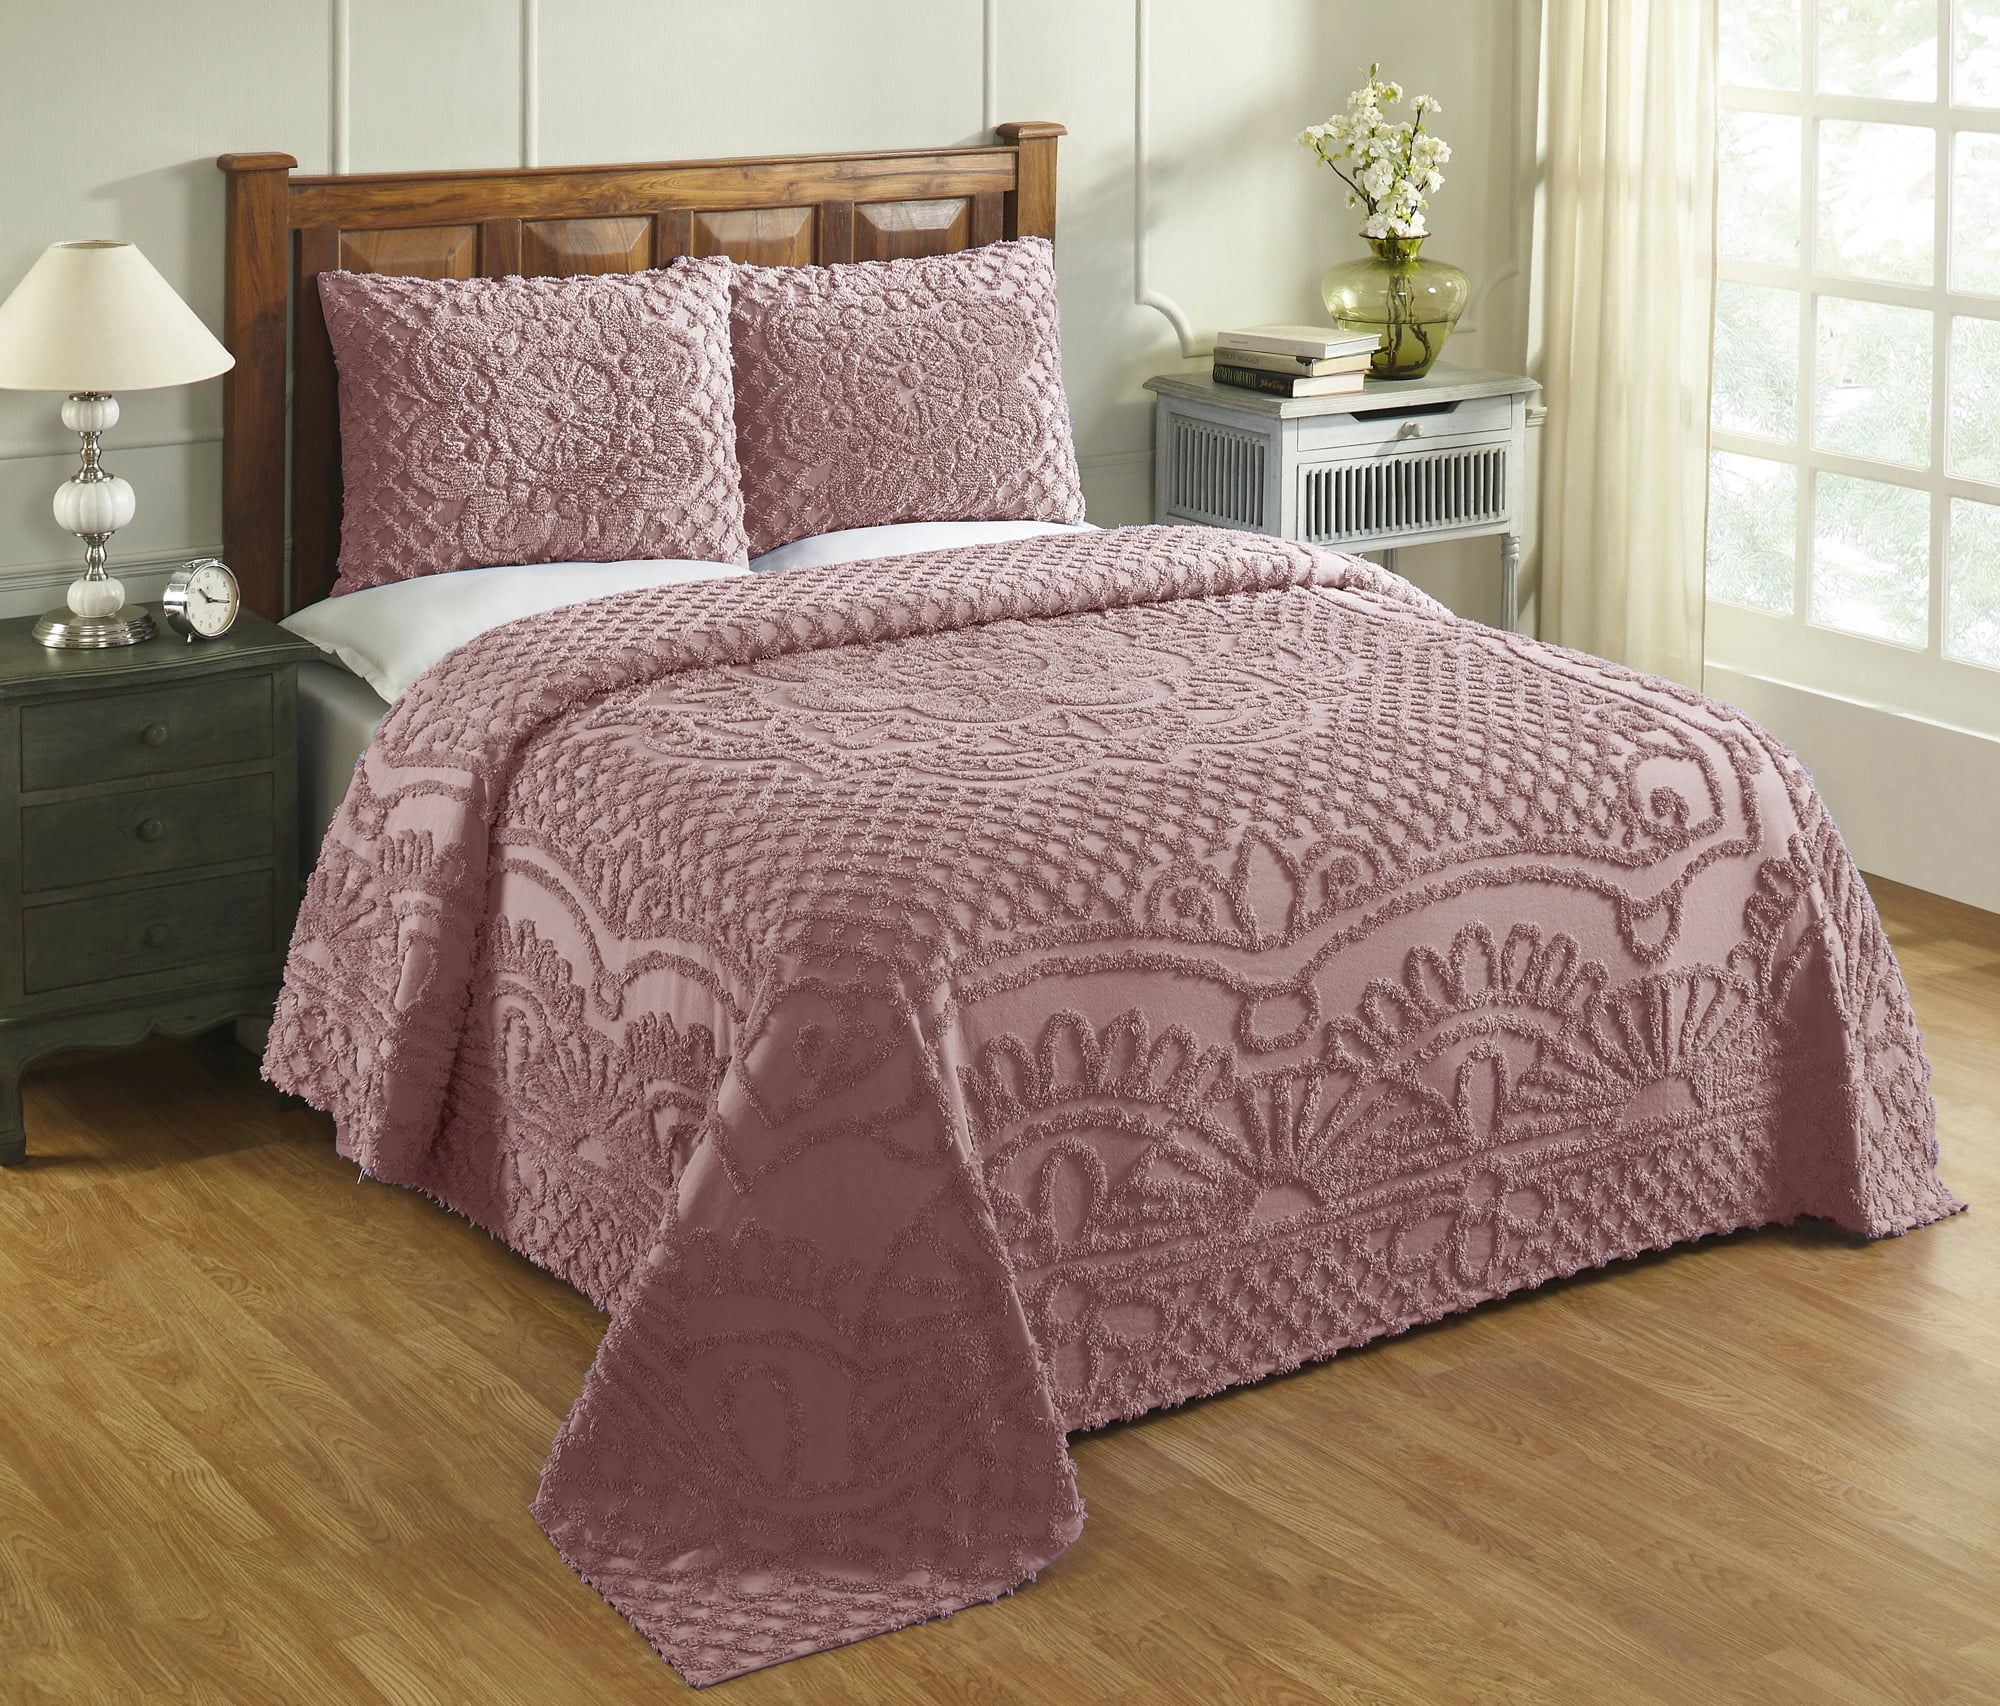 4 Piece Sheet Set Details about   Superior 100% Cotton Trellis Geometric Bedding Soft and Brea 